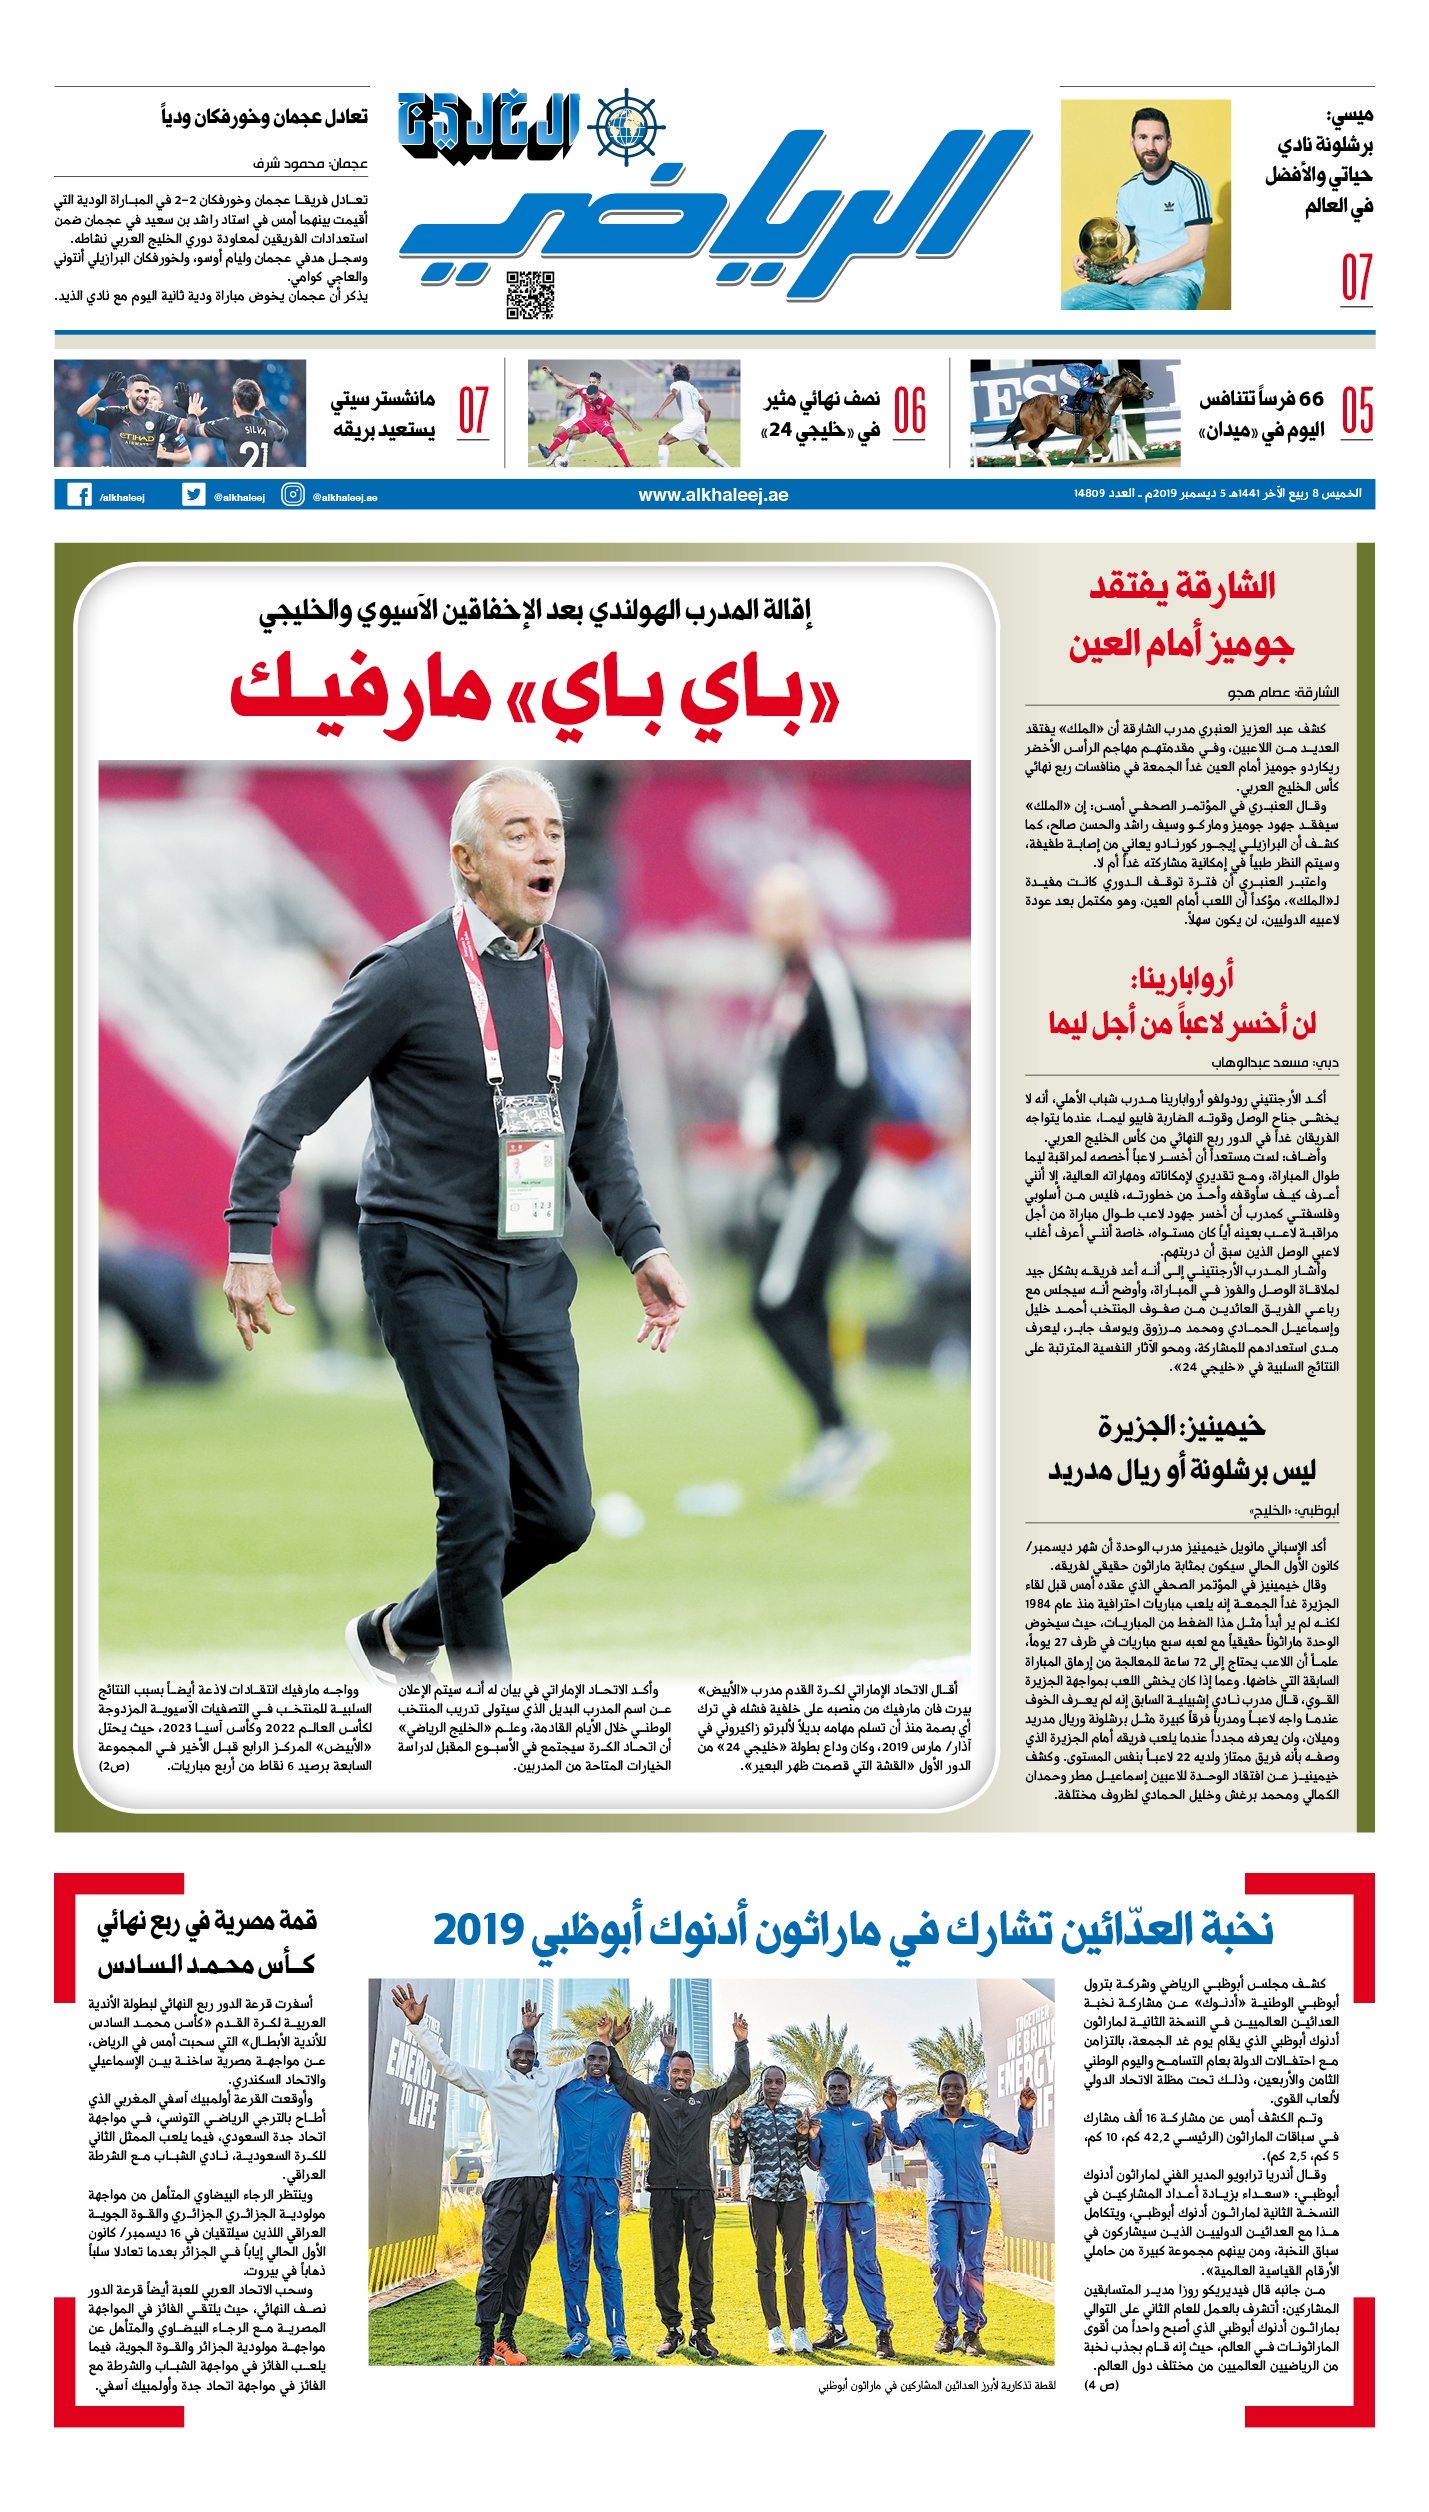 غلاف صحيفة الخليج الاماراتية